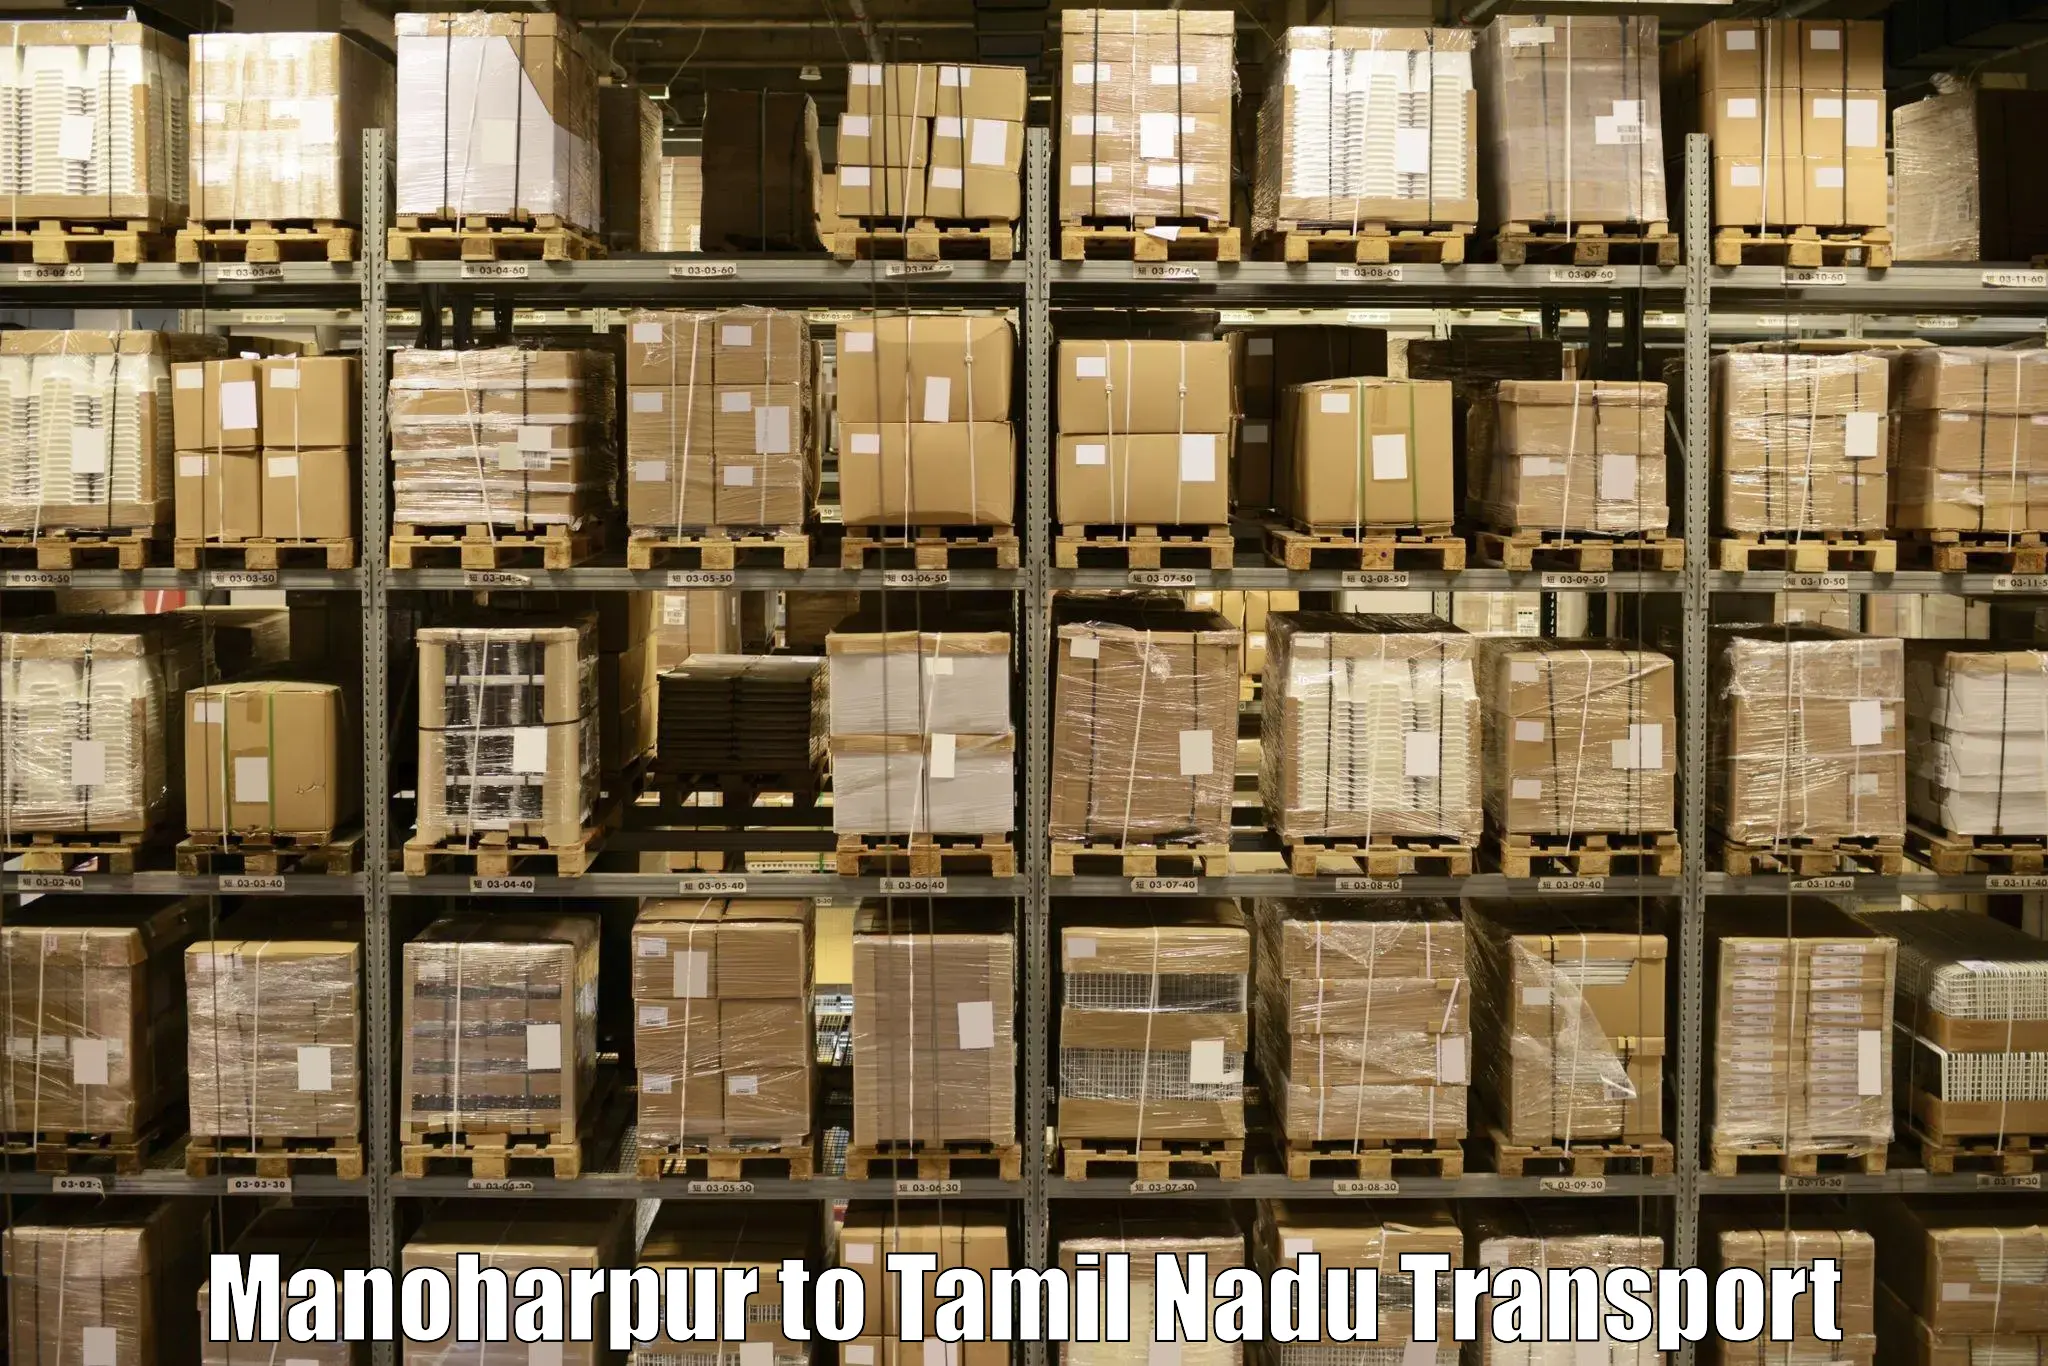 Daily transport service Manoharpur to Amrita Vishwa Vidyapeetham Coimbatore